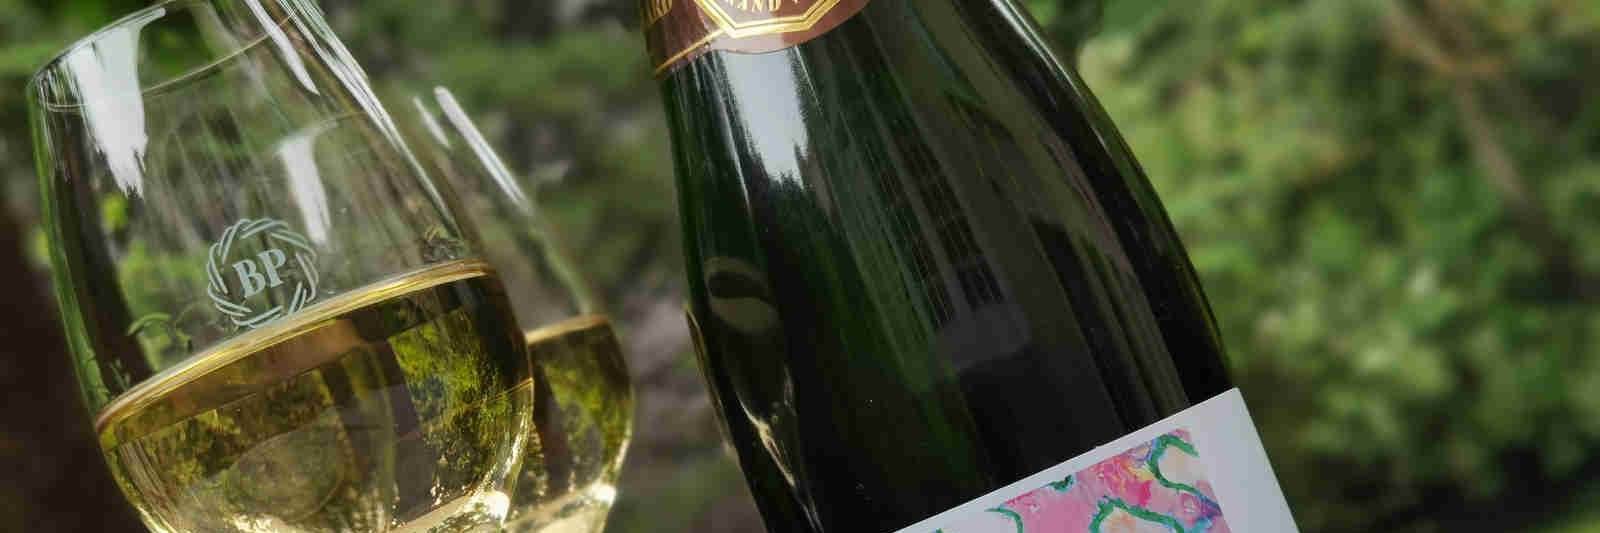 Champagne Bruno Paillard Assemblage 2012